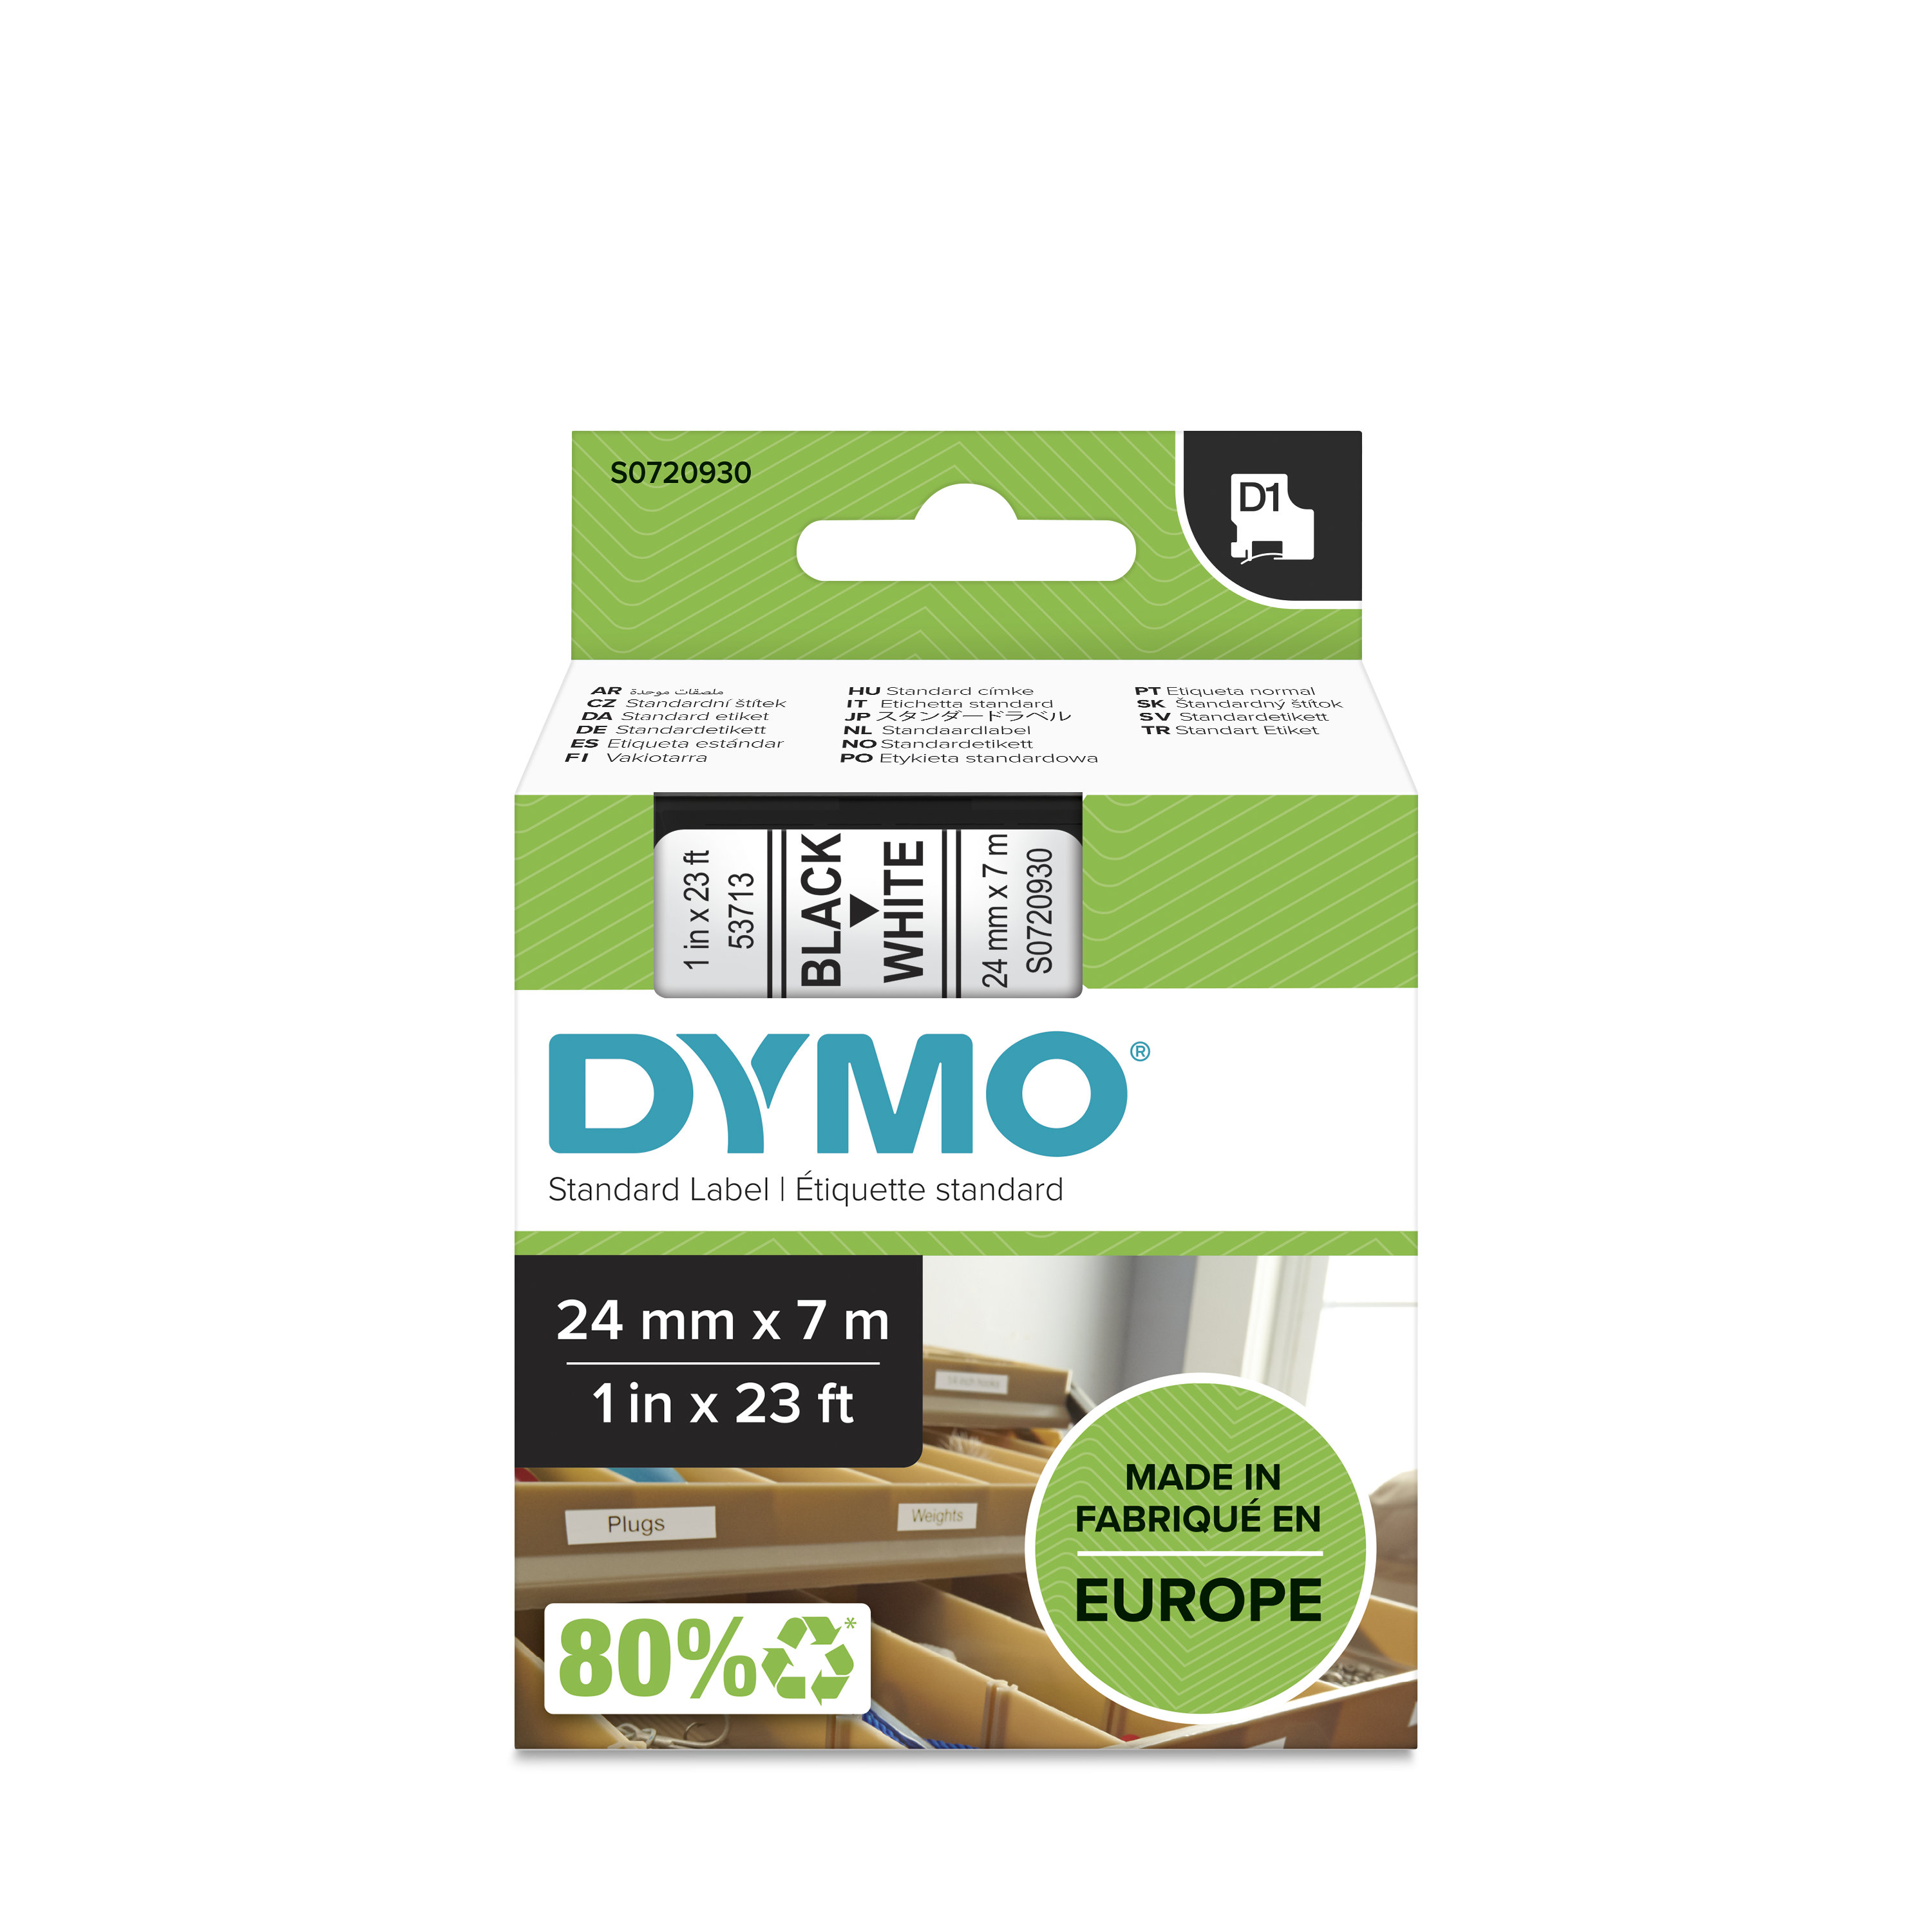 Dymo Black on White Label Printer Tape, 7 m Length, 24 mm Width